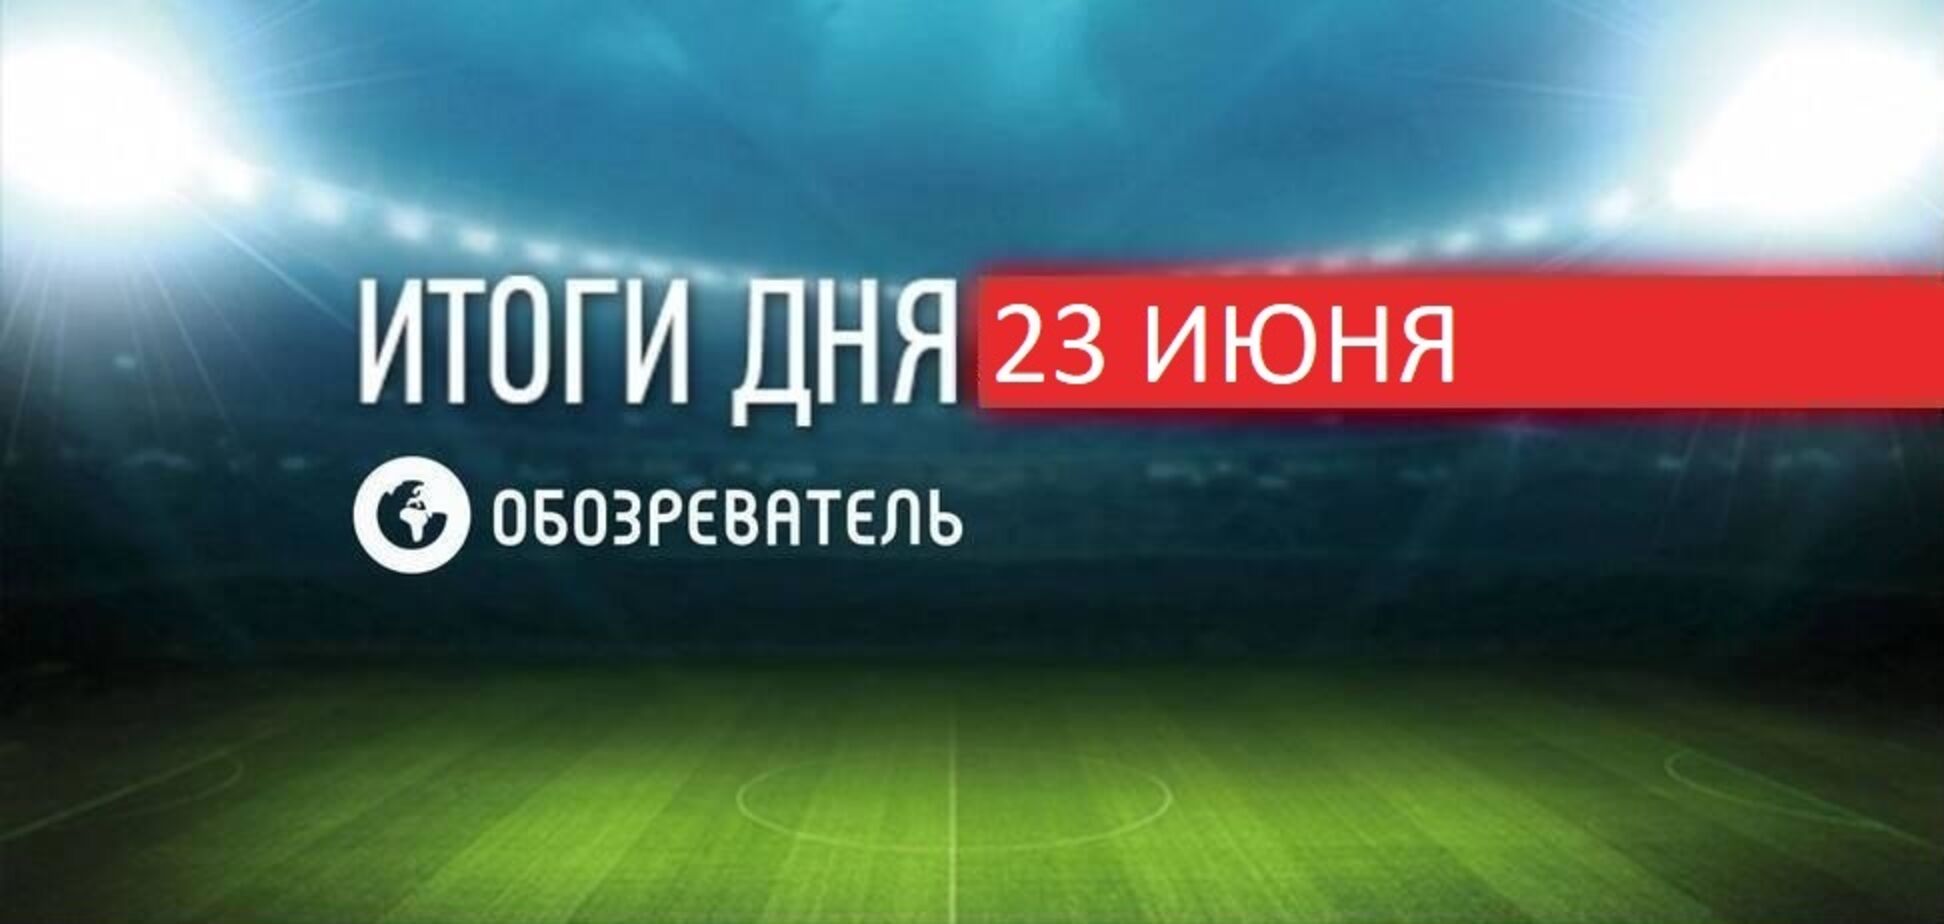 Украины вышла в плей-офф Евро-2020: новости спорта 23 июня